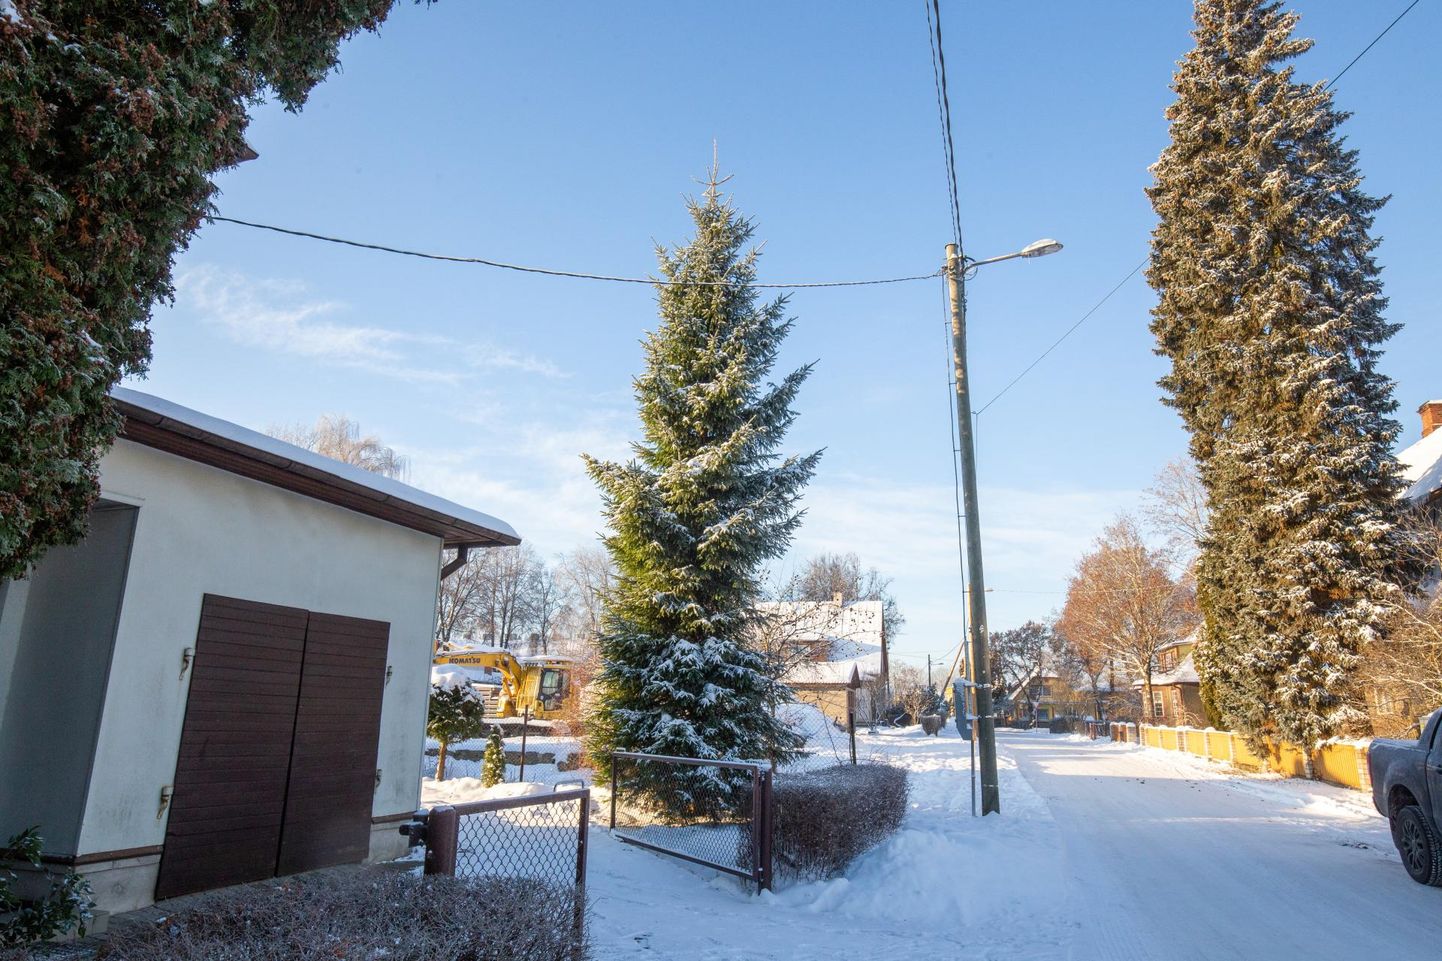 Viljandis Meeme tänaval kasvav viiemeetrine kuusk soovib selle omaniku Mare Hirve sõnul saada tänavu kellegi jõulupuuks.